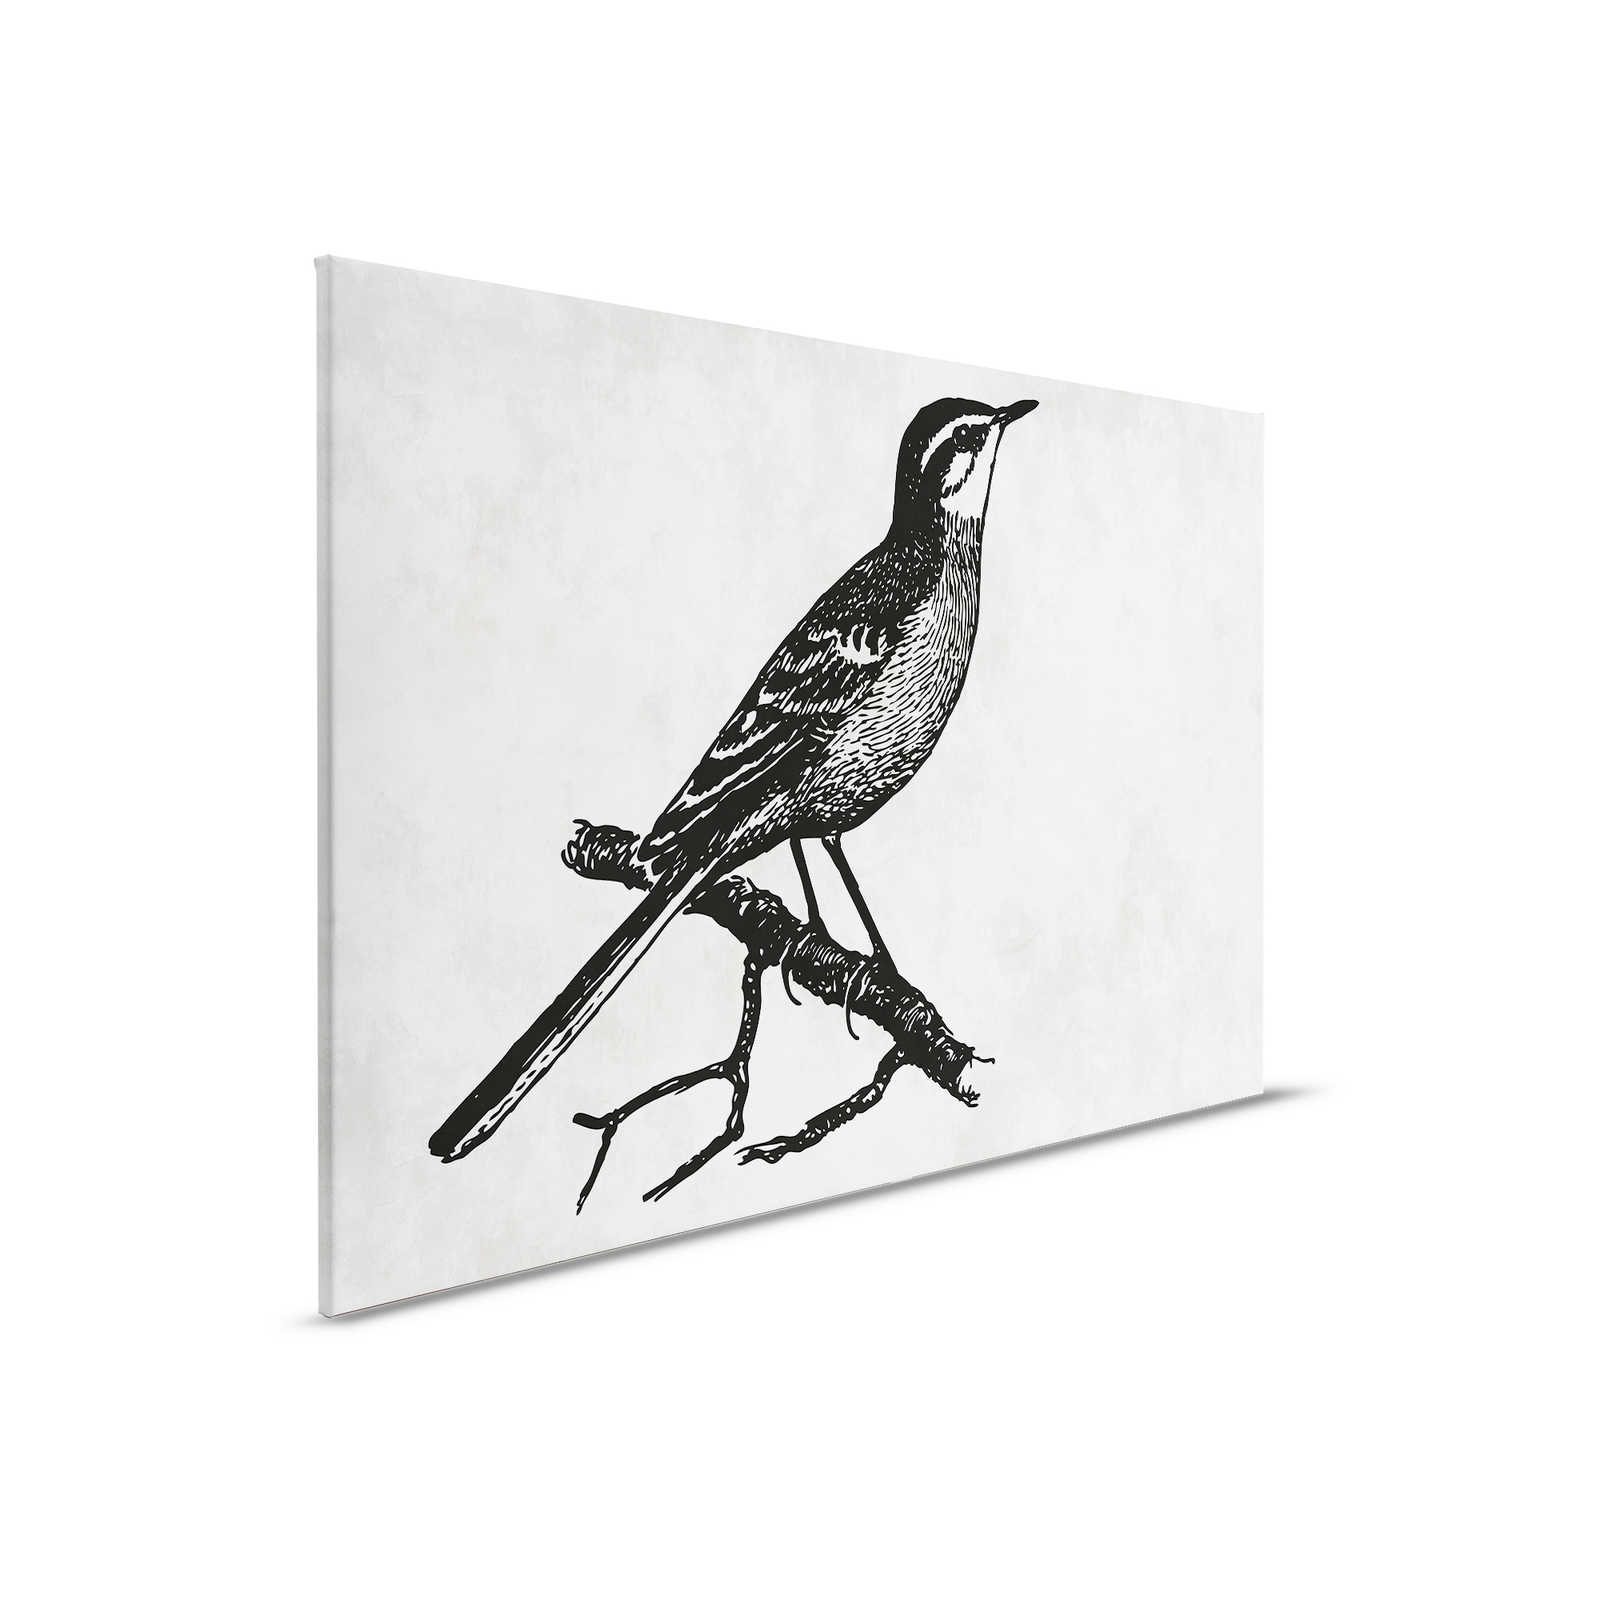             Vogel Leinwandbild im Zeichenlook mit Putzoptik – 0,90 m x 0,60 m
        